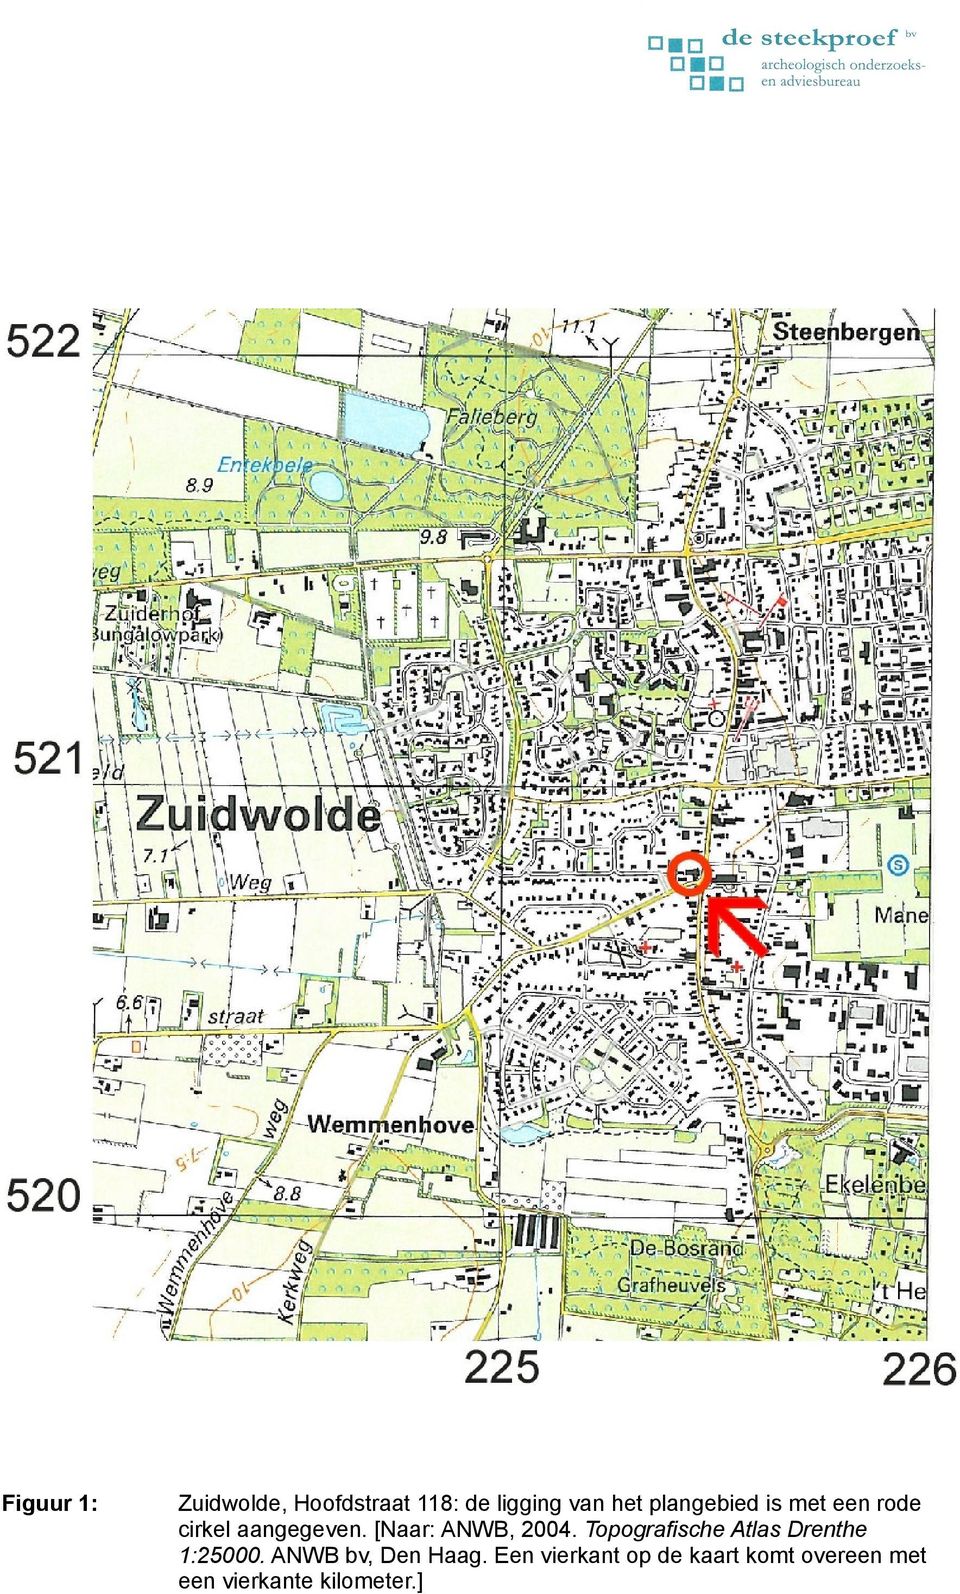 [Naar: ANWB, 2004. Topografische Atlas Drenthe 1:25000.